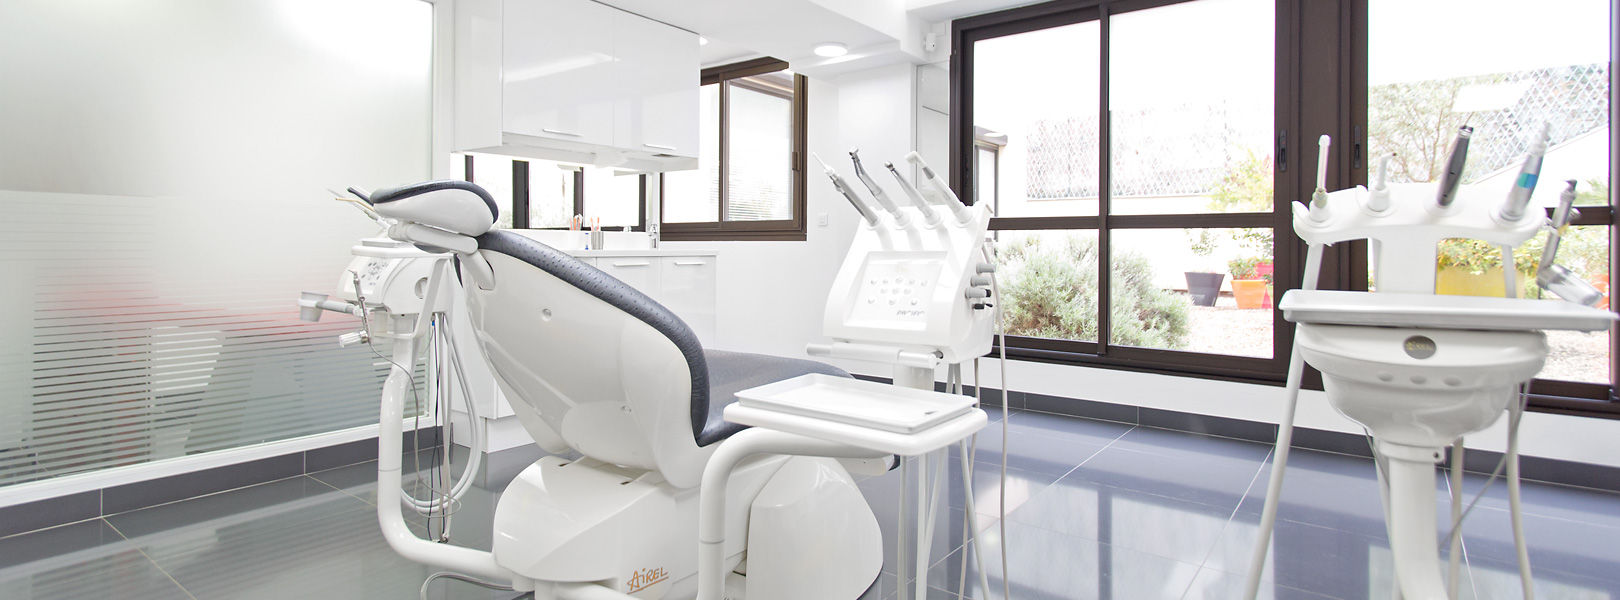 salle de traitement moderne, propre et spacieuse au cabinet d'orthodontie du Dr. Prilleux